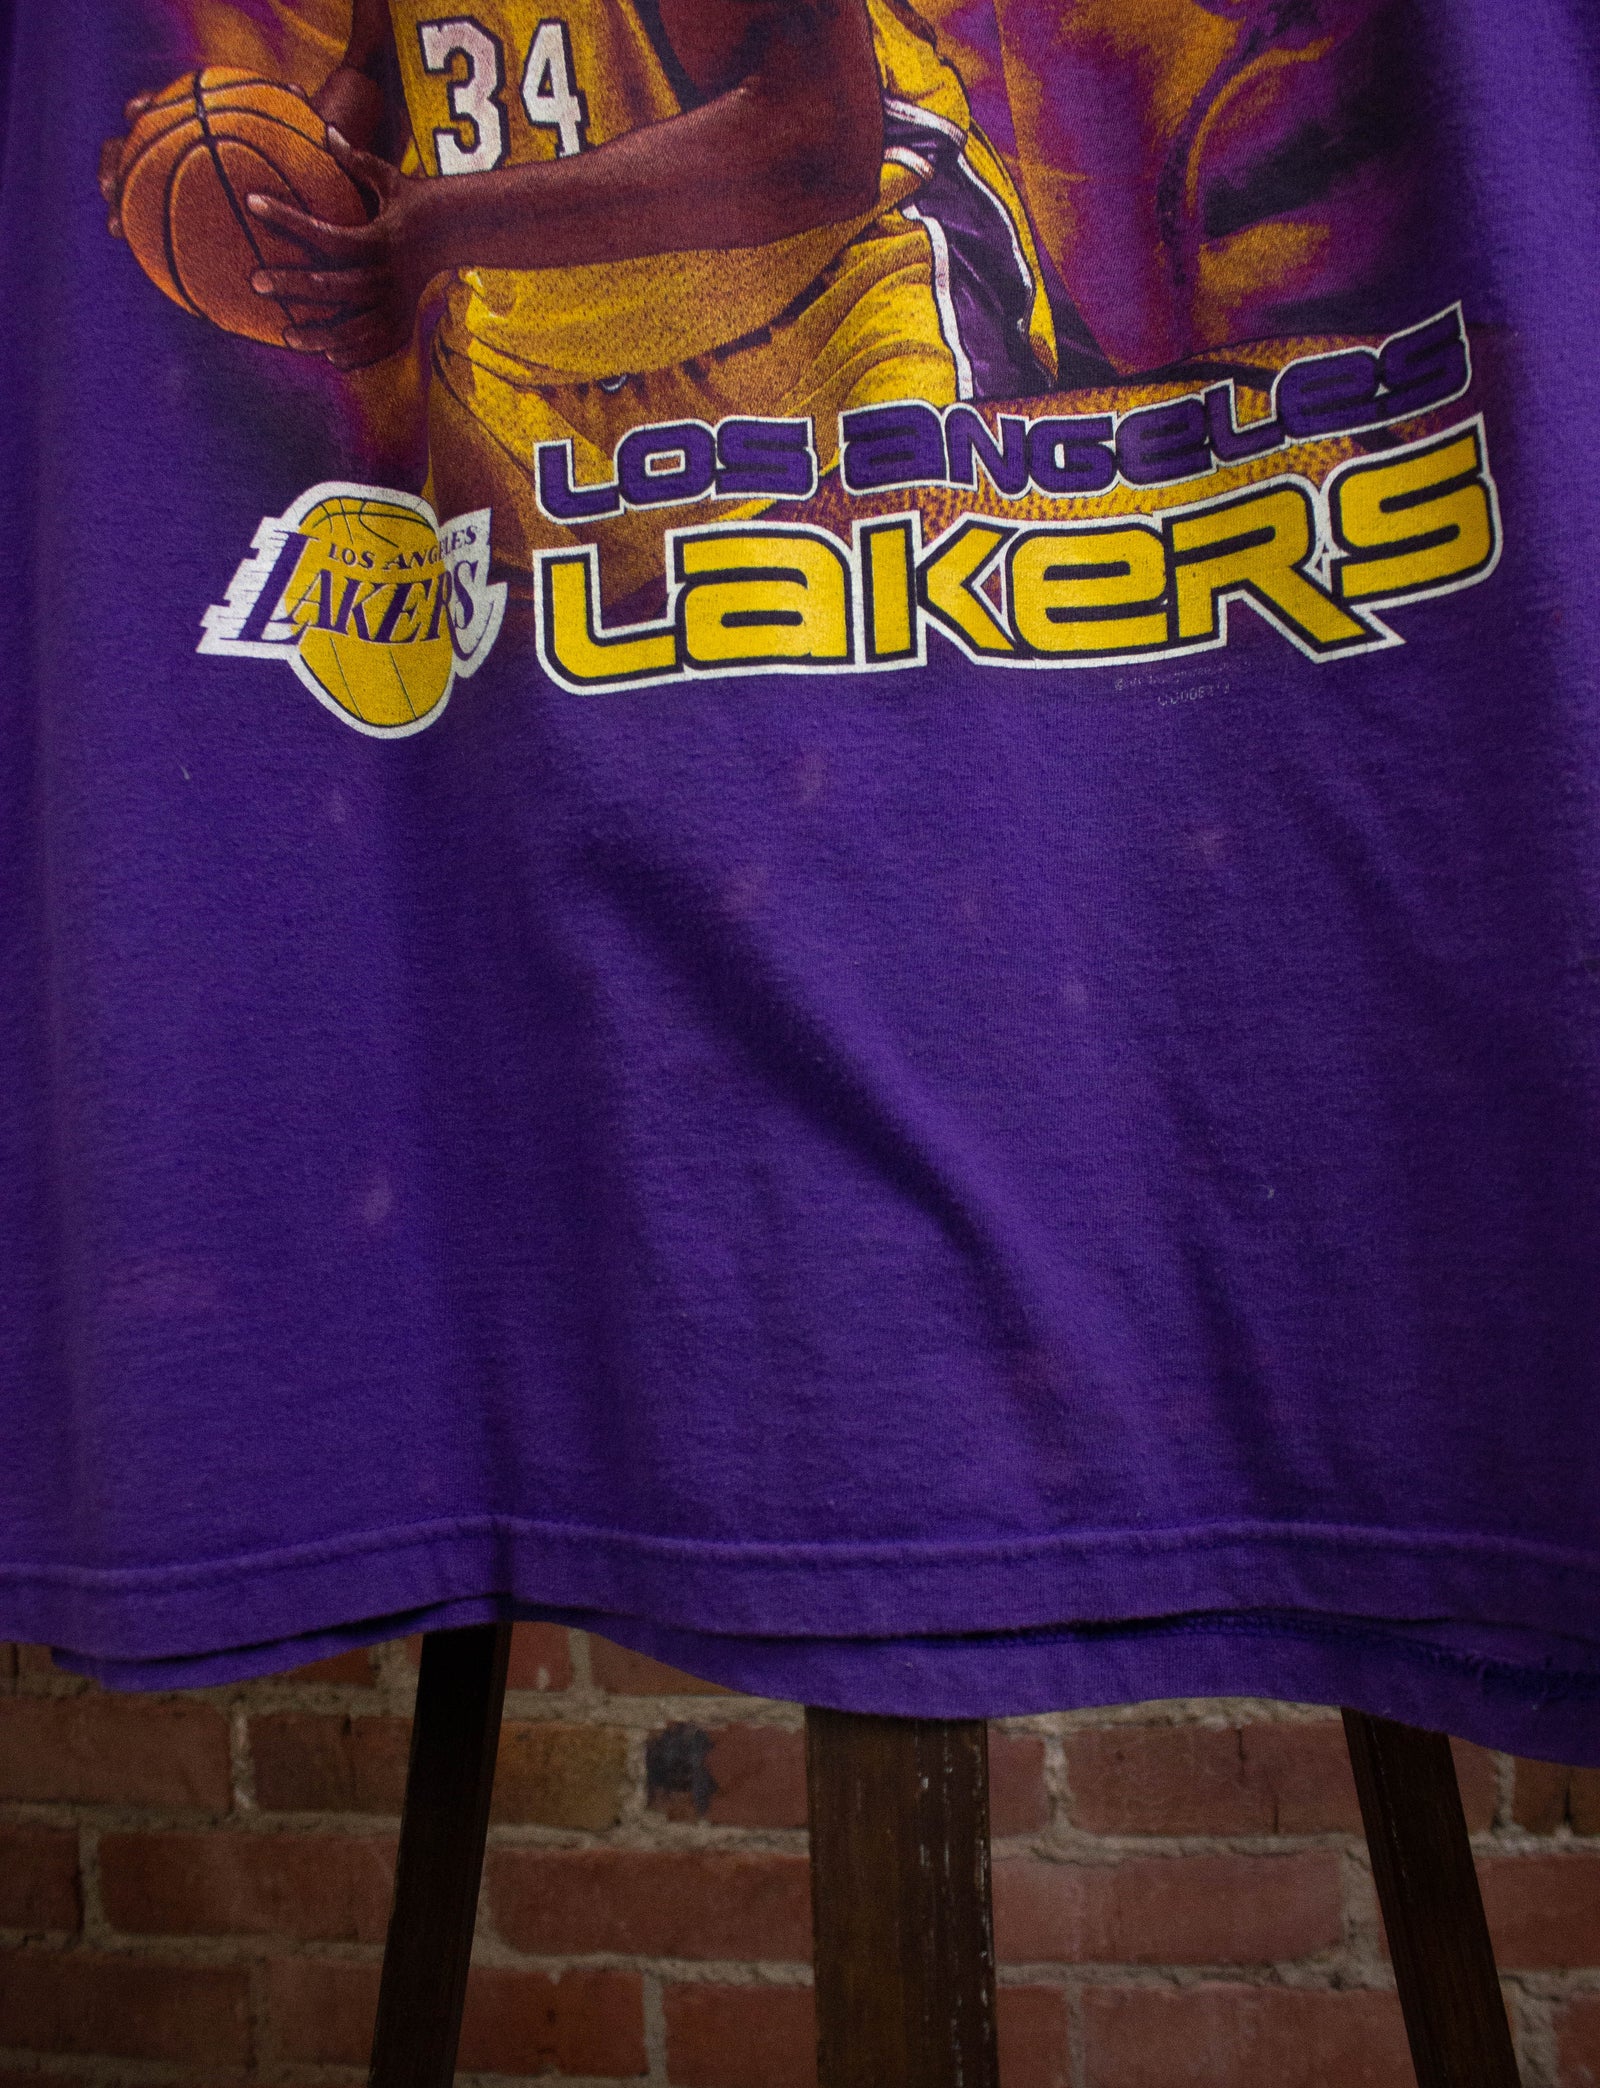 Vintage - Men - Game Lakers Hoodie Purple - Purple - Nohble